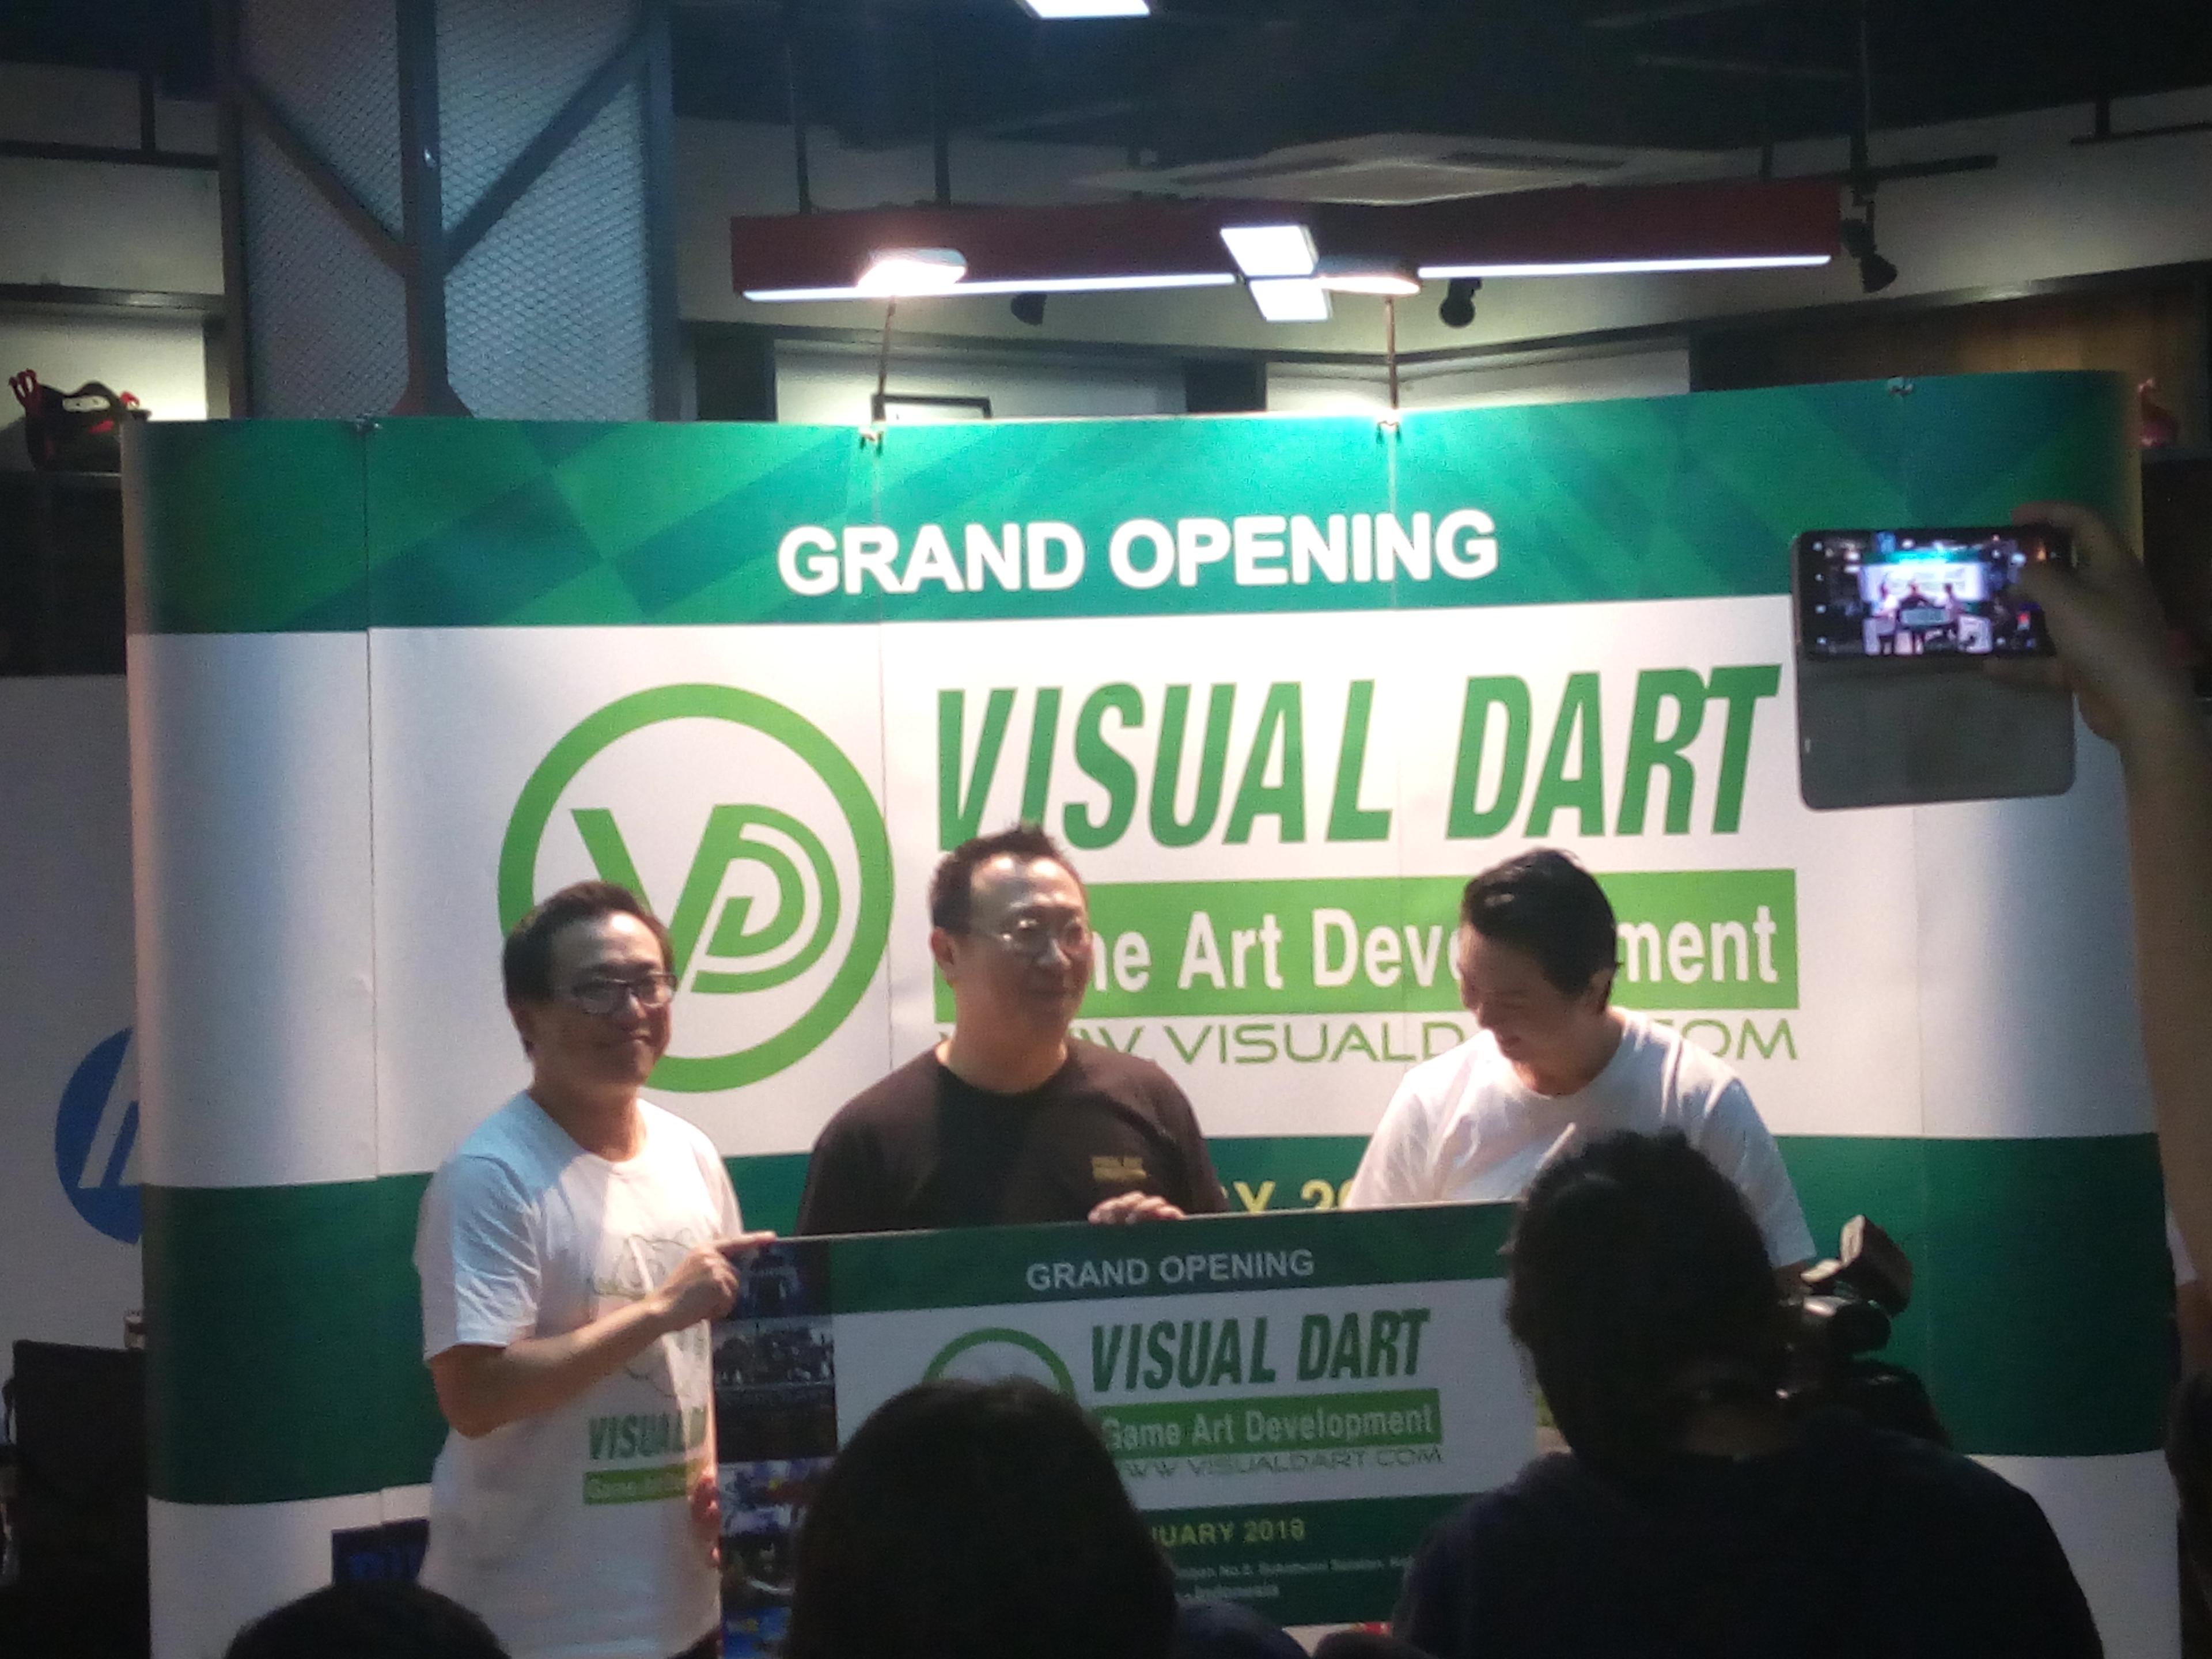 VISUAL DART, Perusahaan Game Art Development No. 1 di Korea Resmi Membuka Kantor Di Indonesia